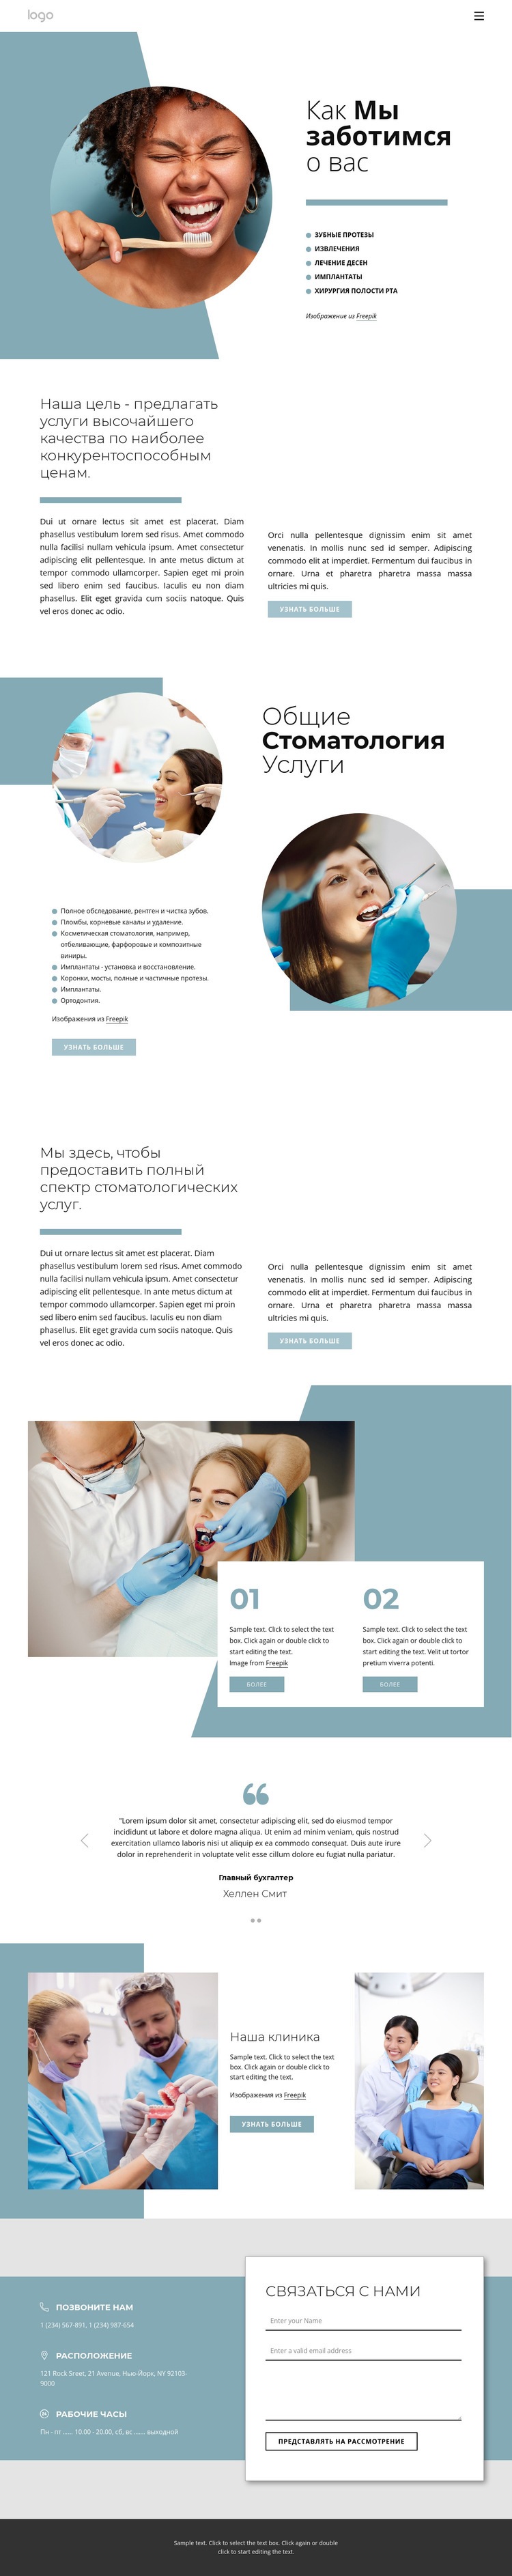 Качественные стоматологические услуги HTML5 шаблон